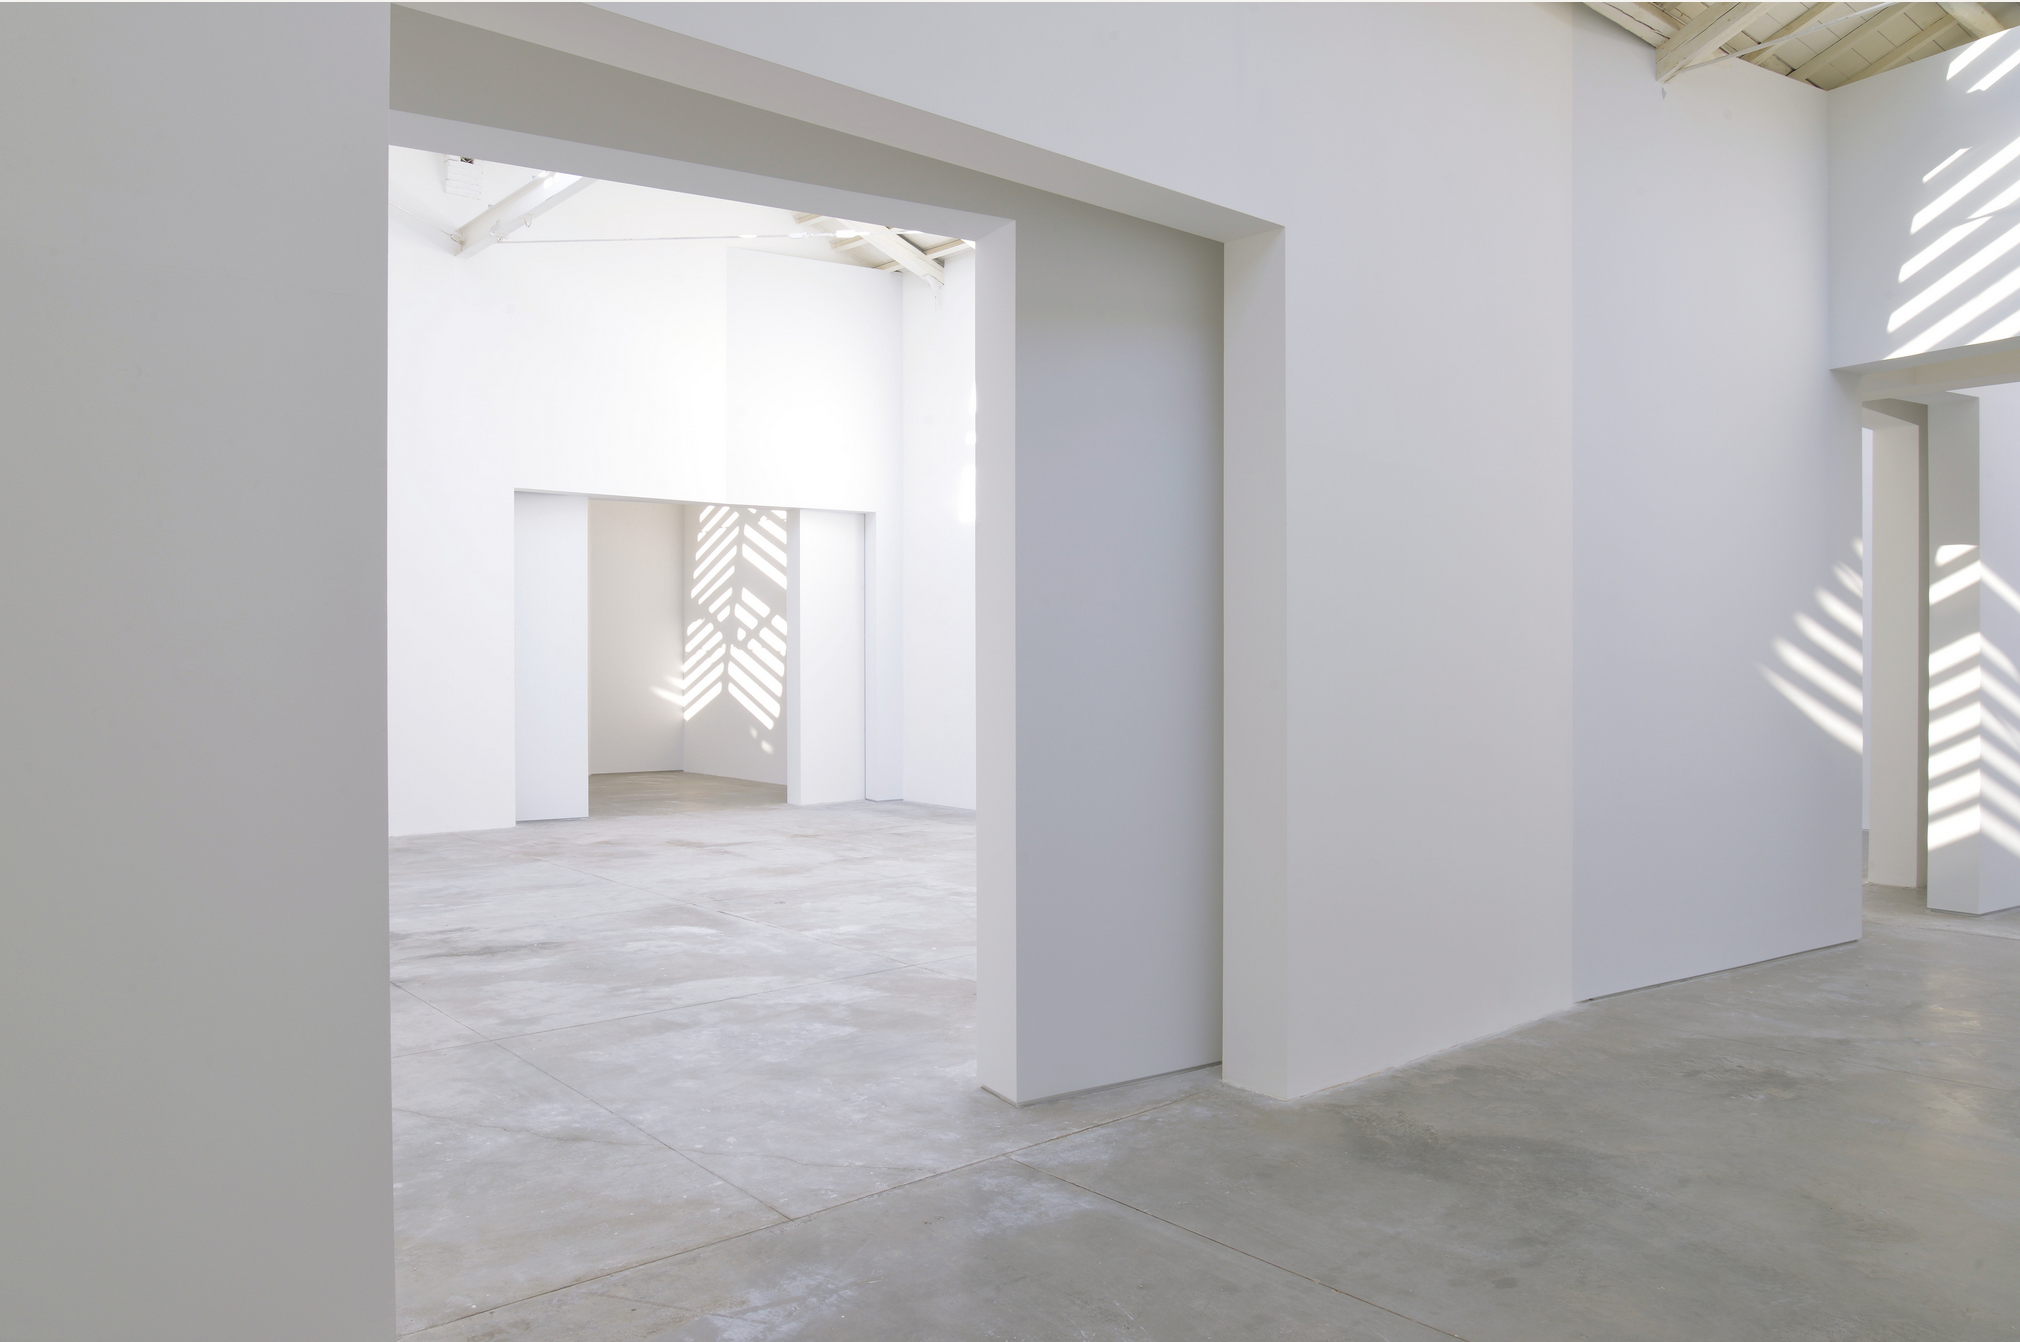 'Corrección', proyecto de Ignasi Aballí para el Pabellón de España en La Biennale di Venezia. Foto: Claudio Franzini.